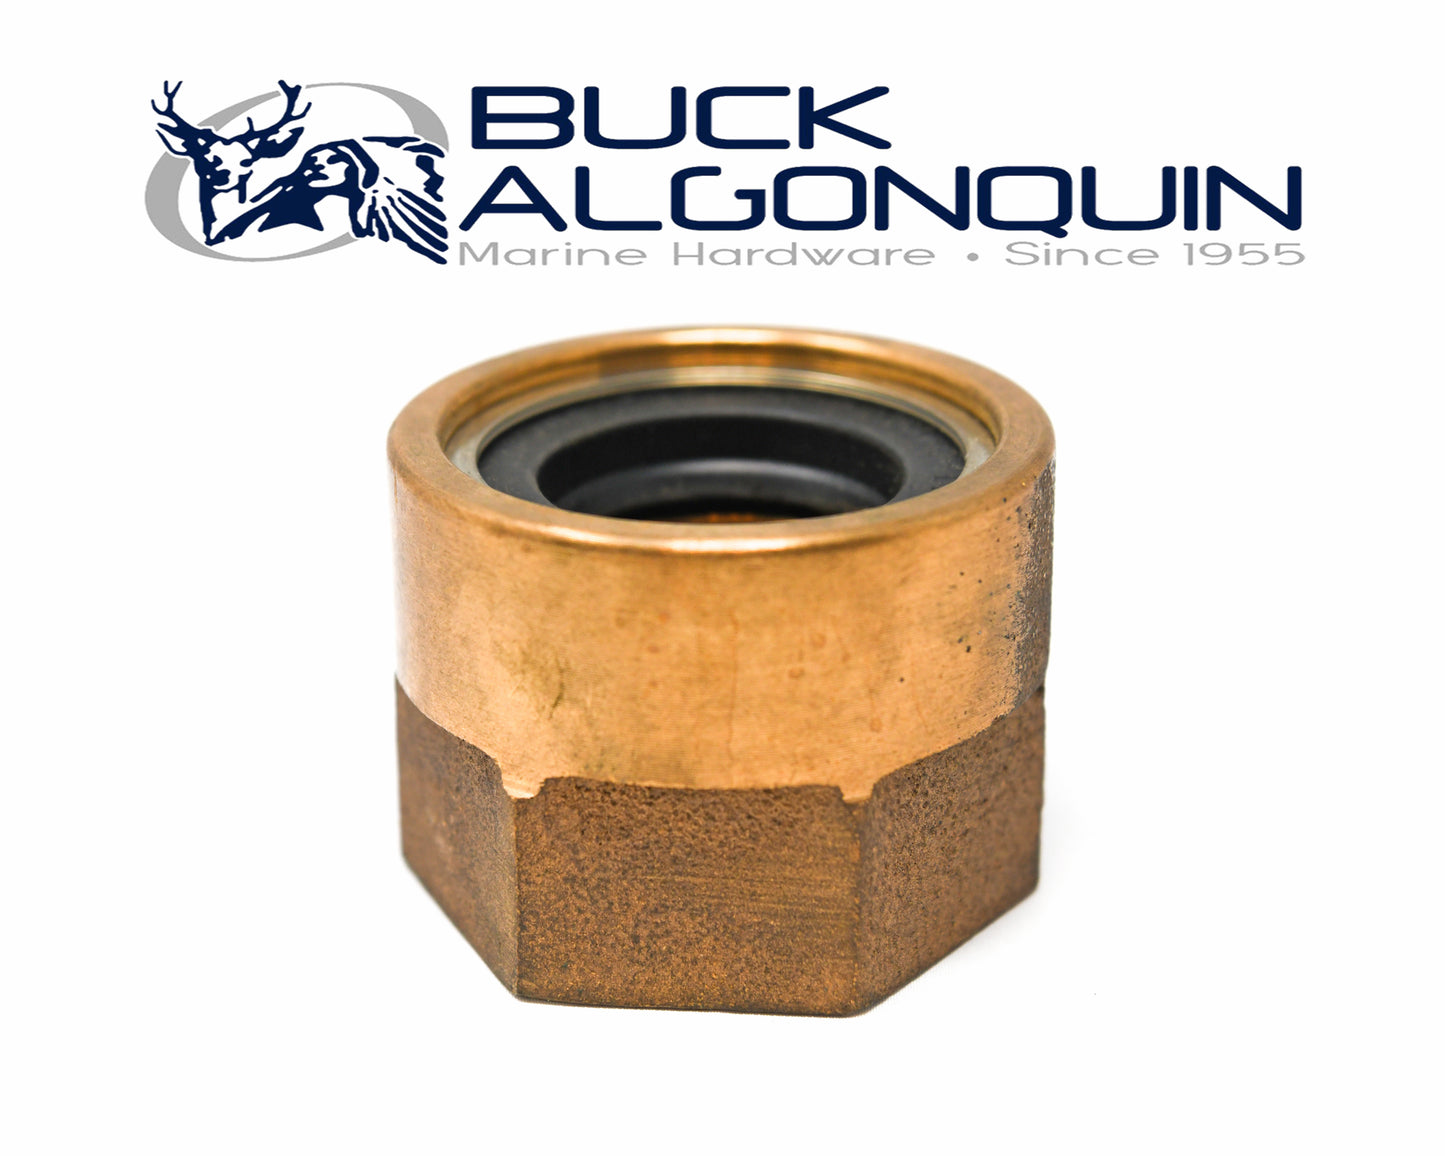 00PB125LS Buck-Algonquin Lip Seal Spud Assy. 1-1/4"